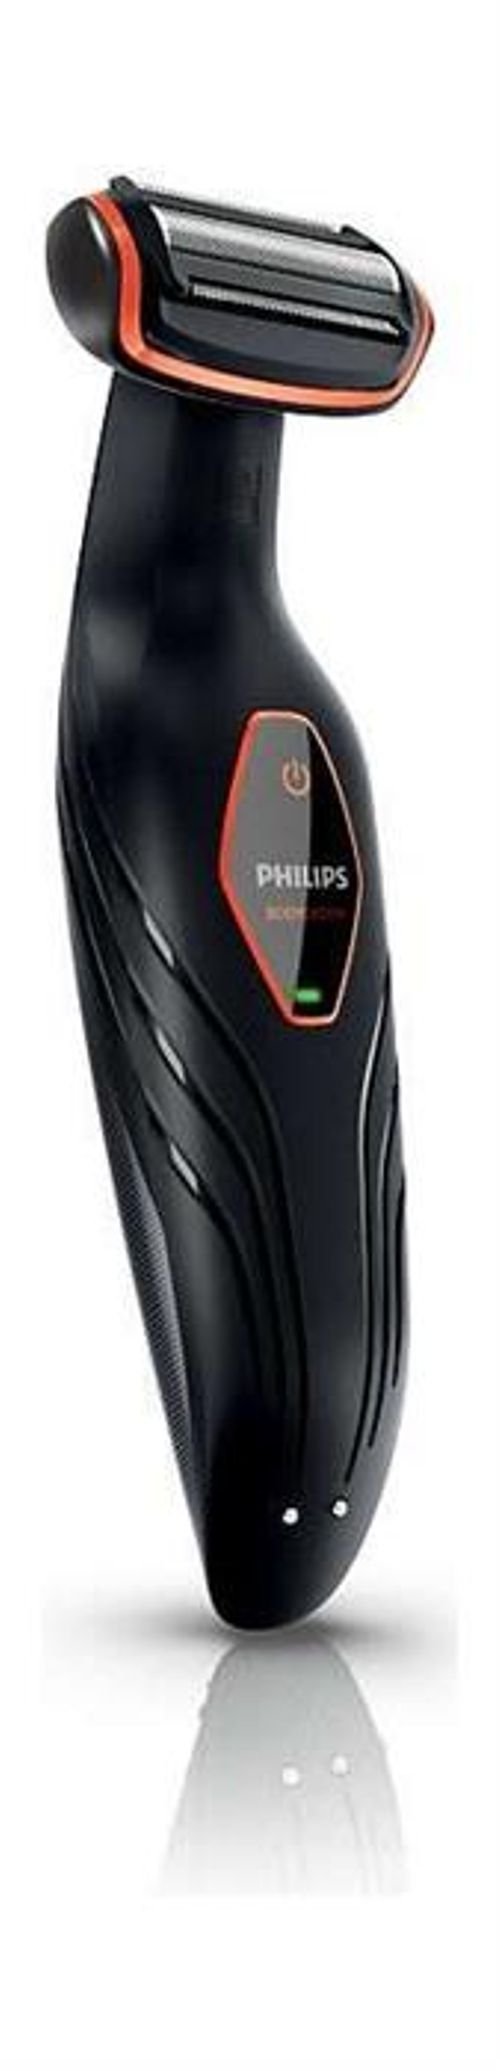 Philips Body Groomer Trimmer/Shaver - model BG2024/15/13